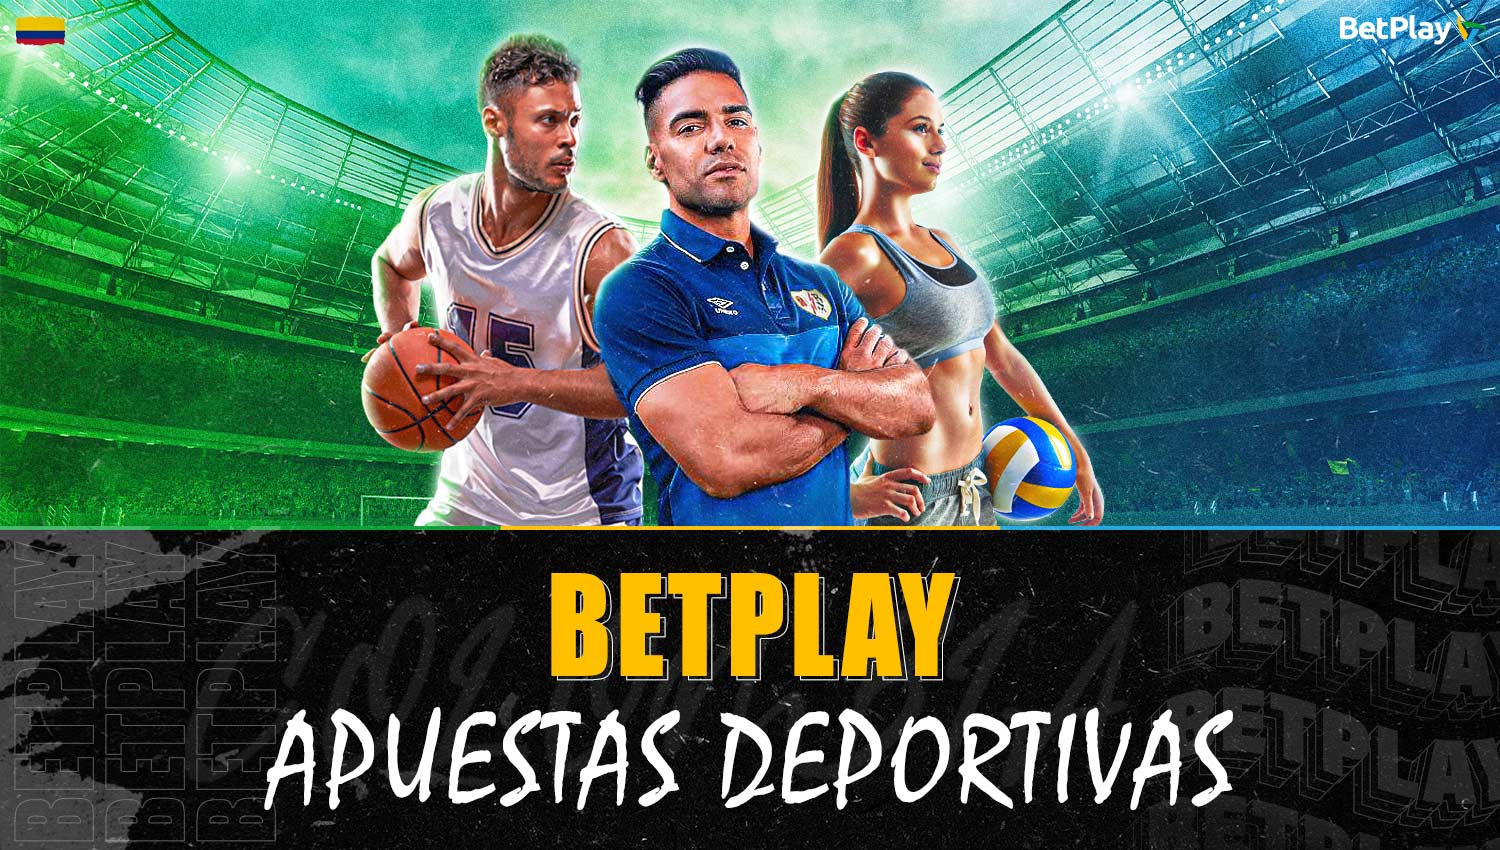 Sobre los deportes disponibles para apostar en Betplay Colombia